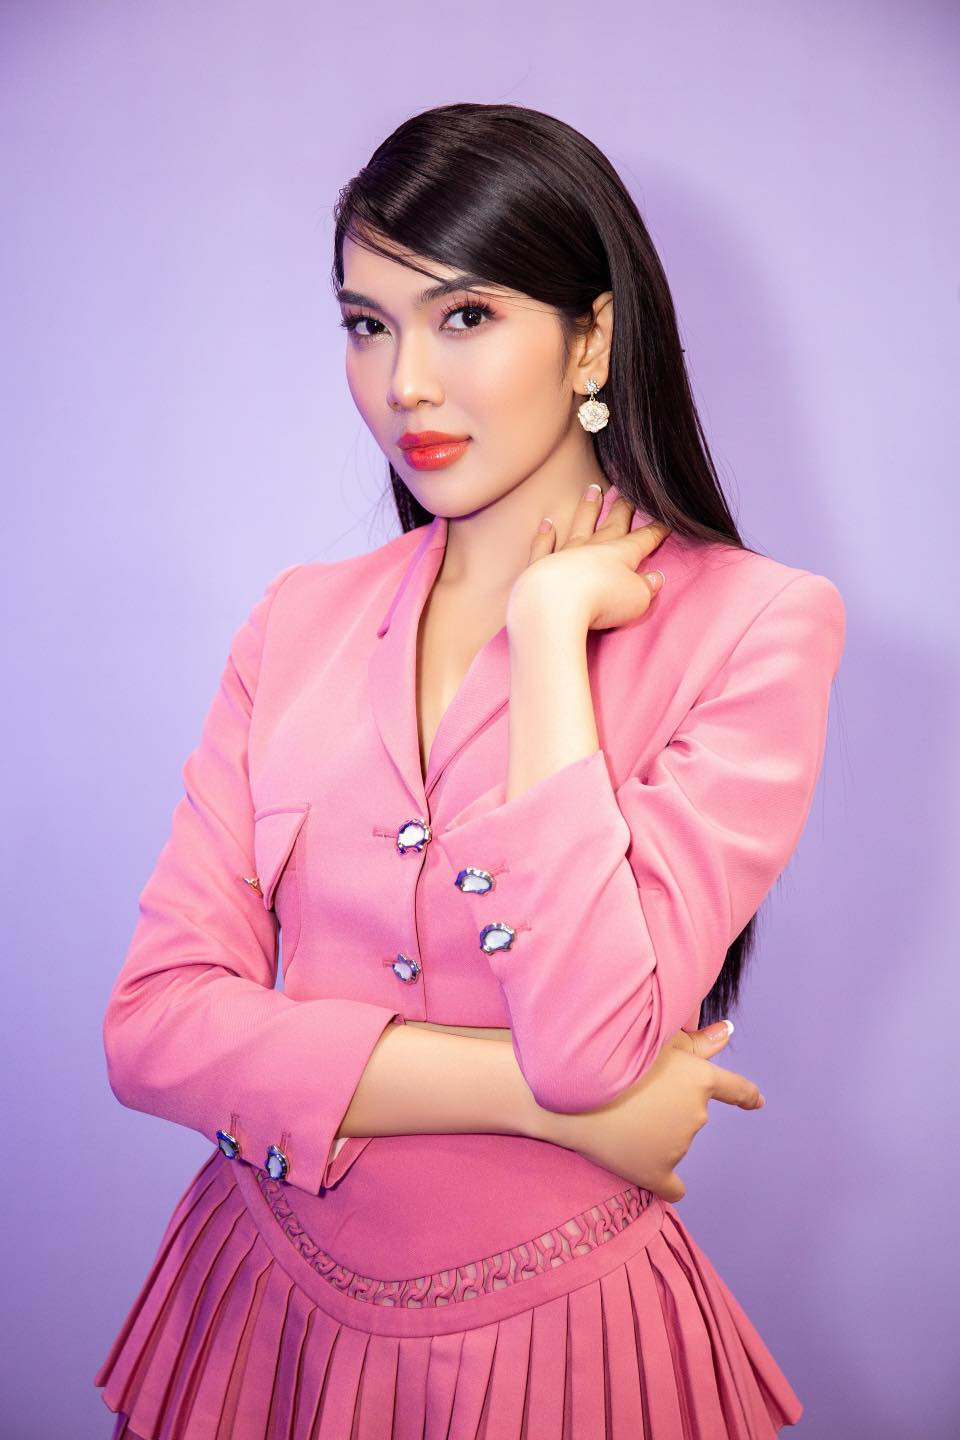 Nhan sắc ngọt ngào của người đẹp thi Hoa hậu Chuyển giới Việt Nam